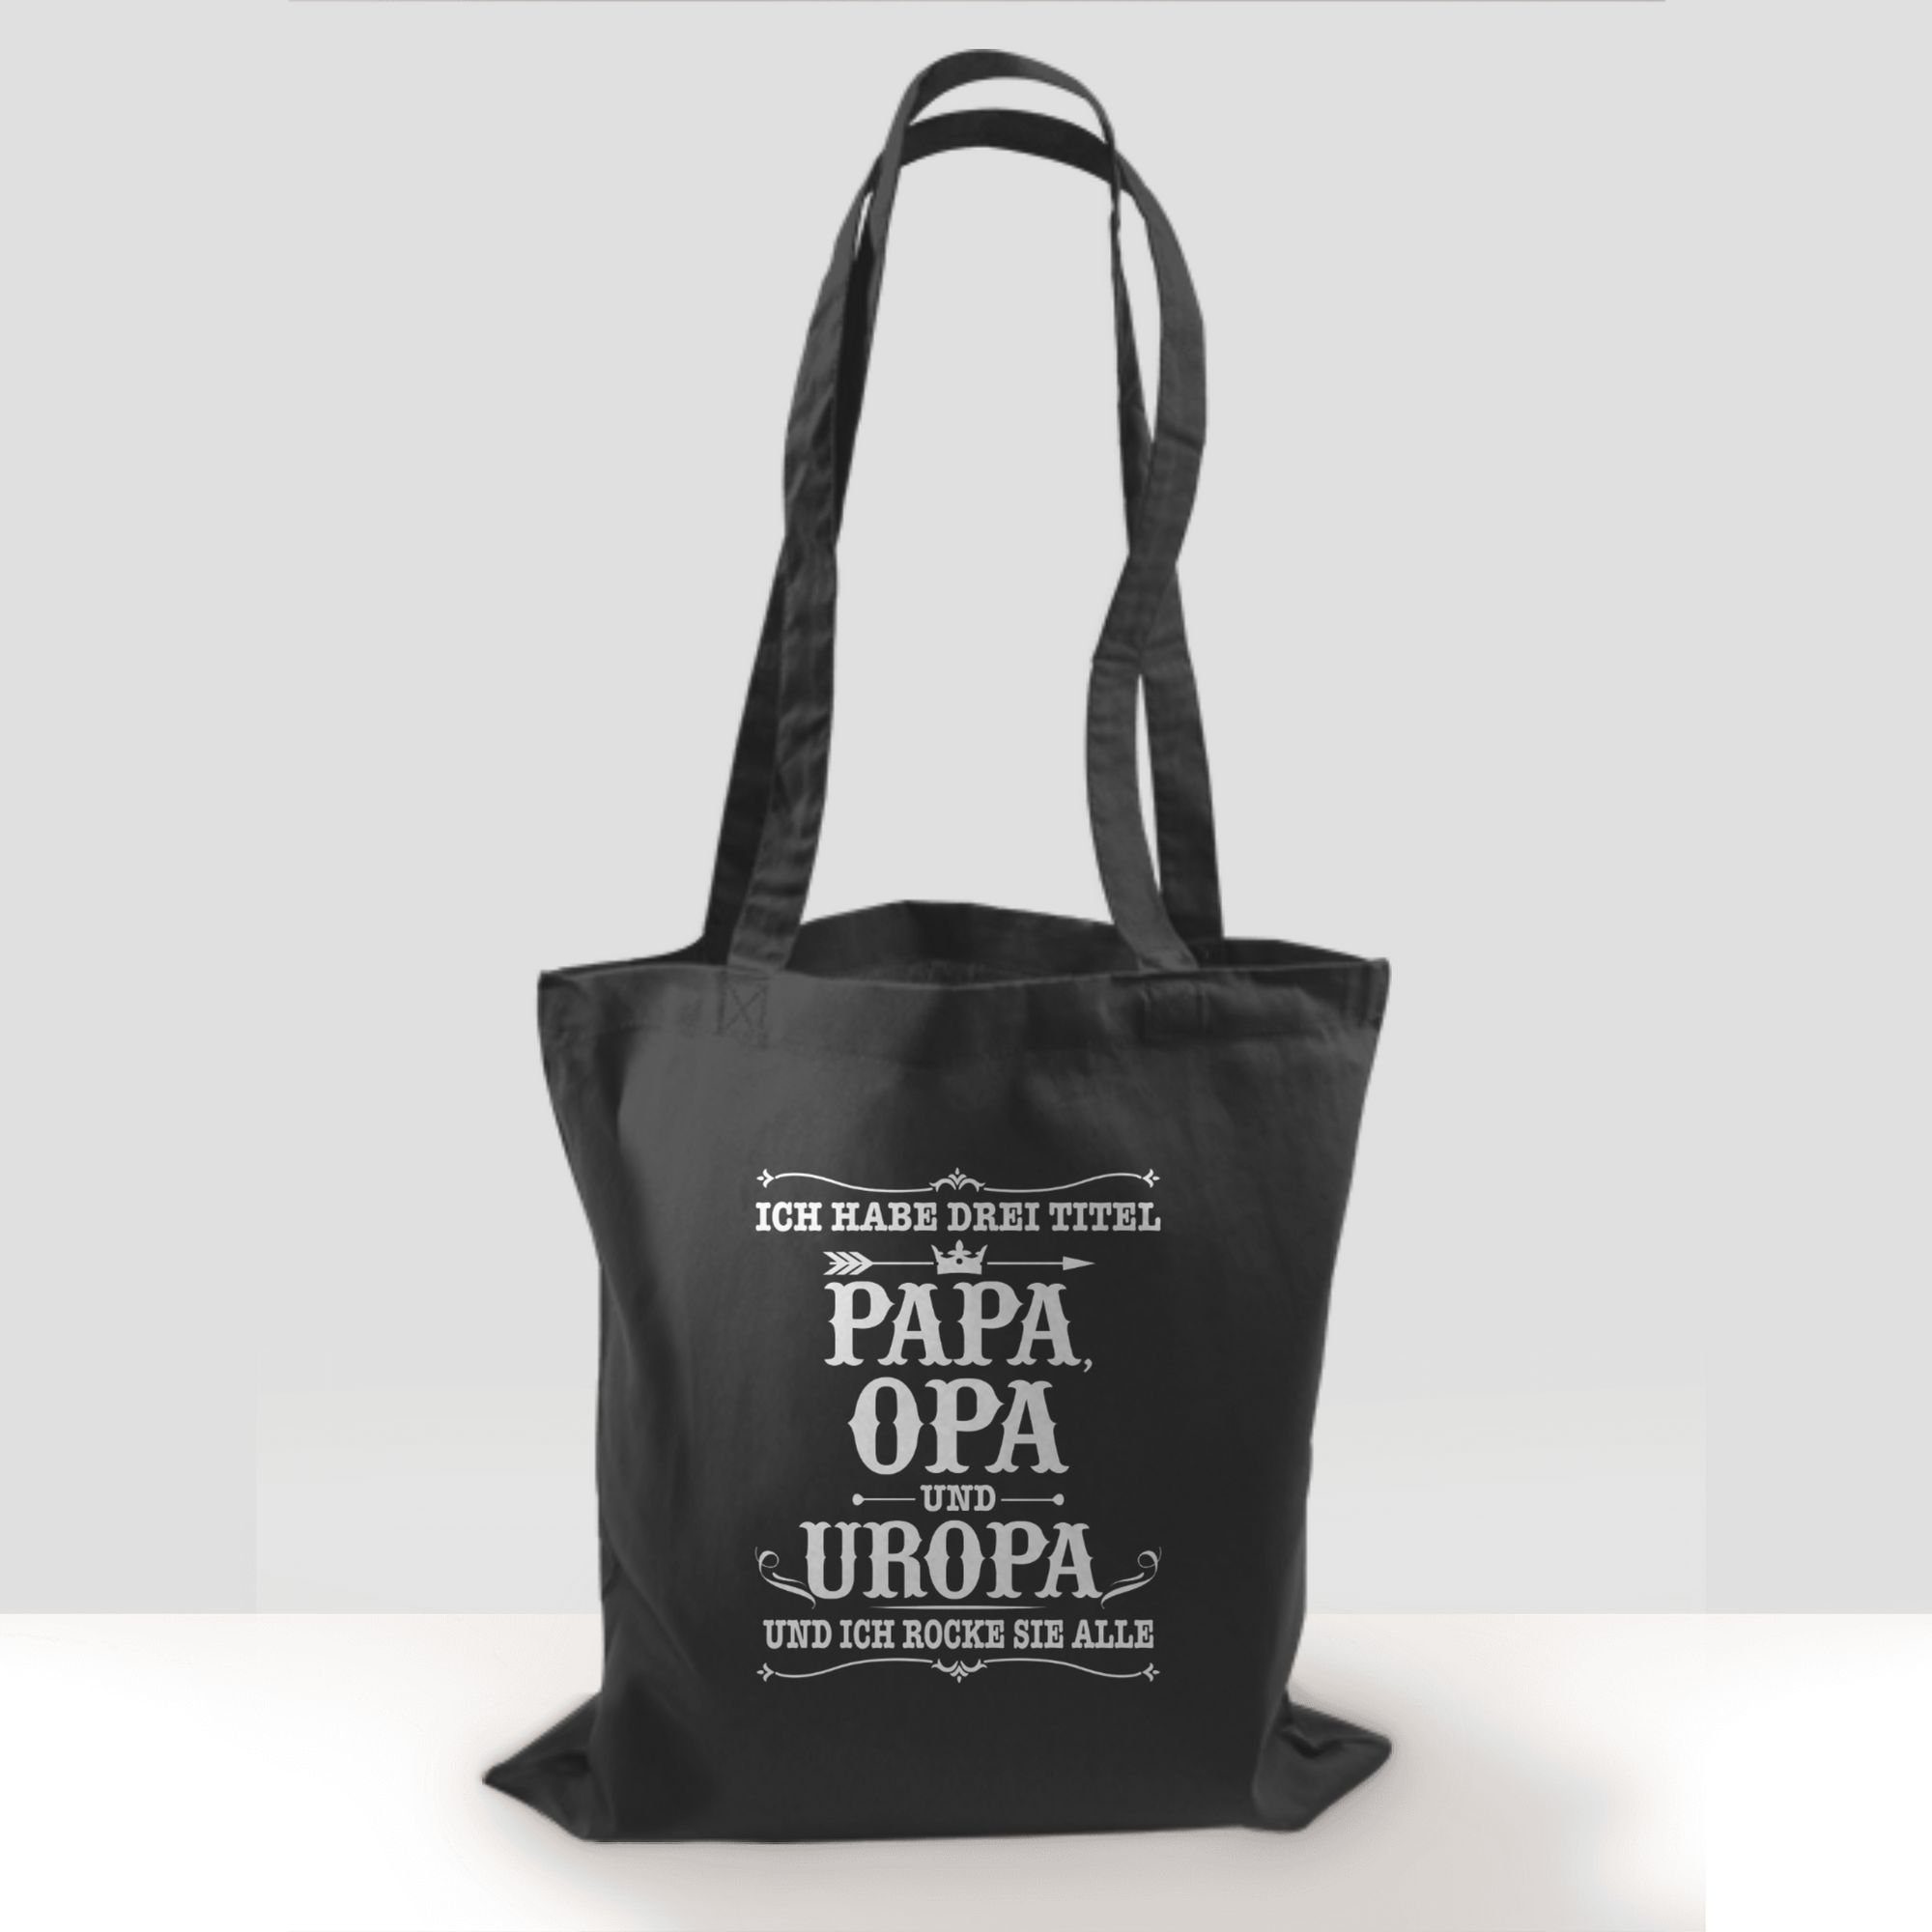 Drei Titel Papa Shirtracer Umhängetasche habe Uropa 2 Opa Opa weiß, Geschenke Dunkelgrau Ich - und